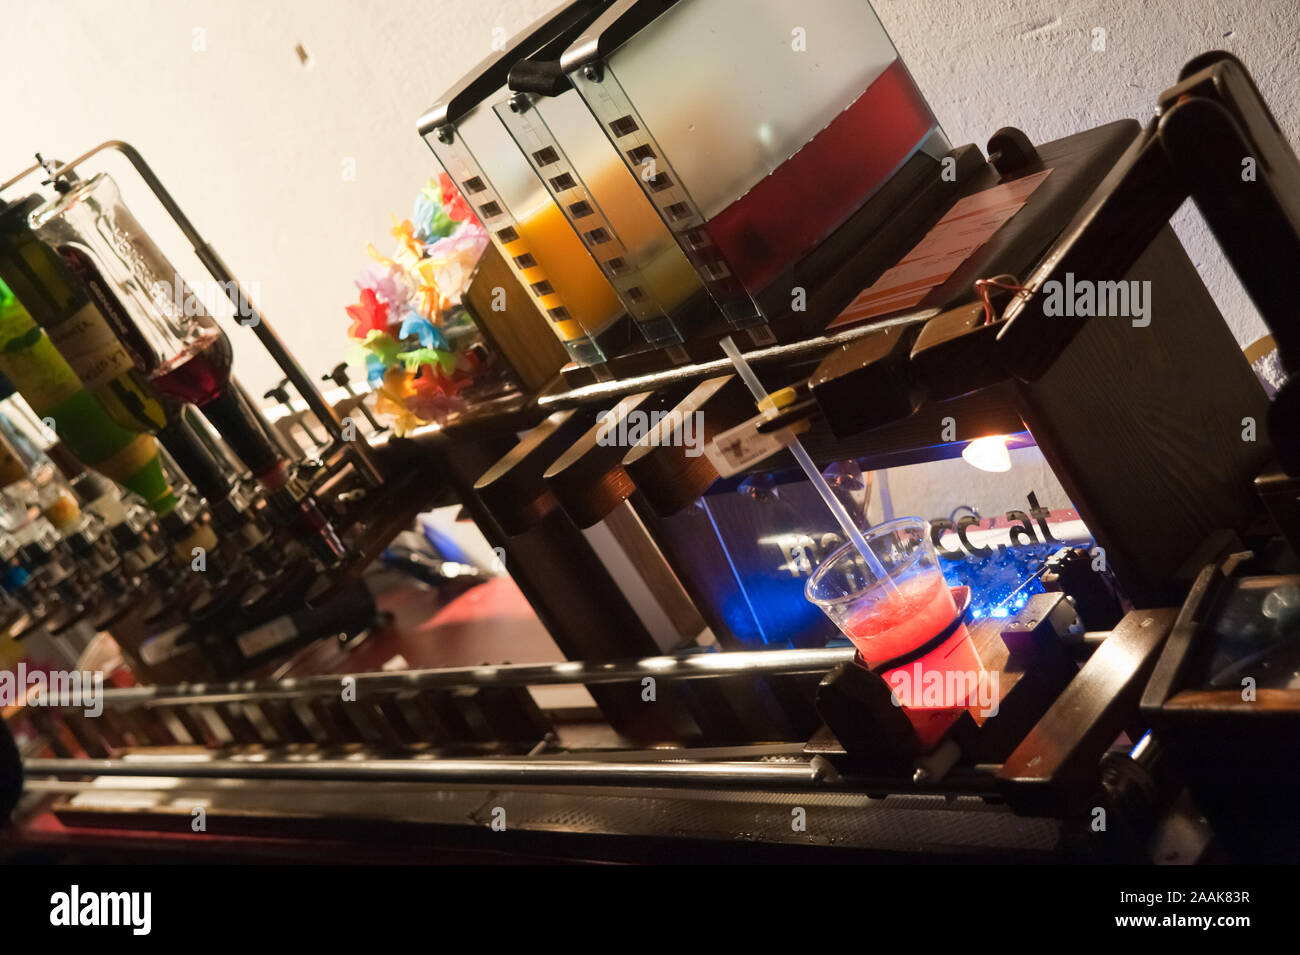 Wien, Roboexotica, Roboter mixen bevande Foto Stock